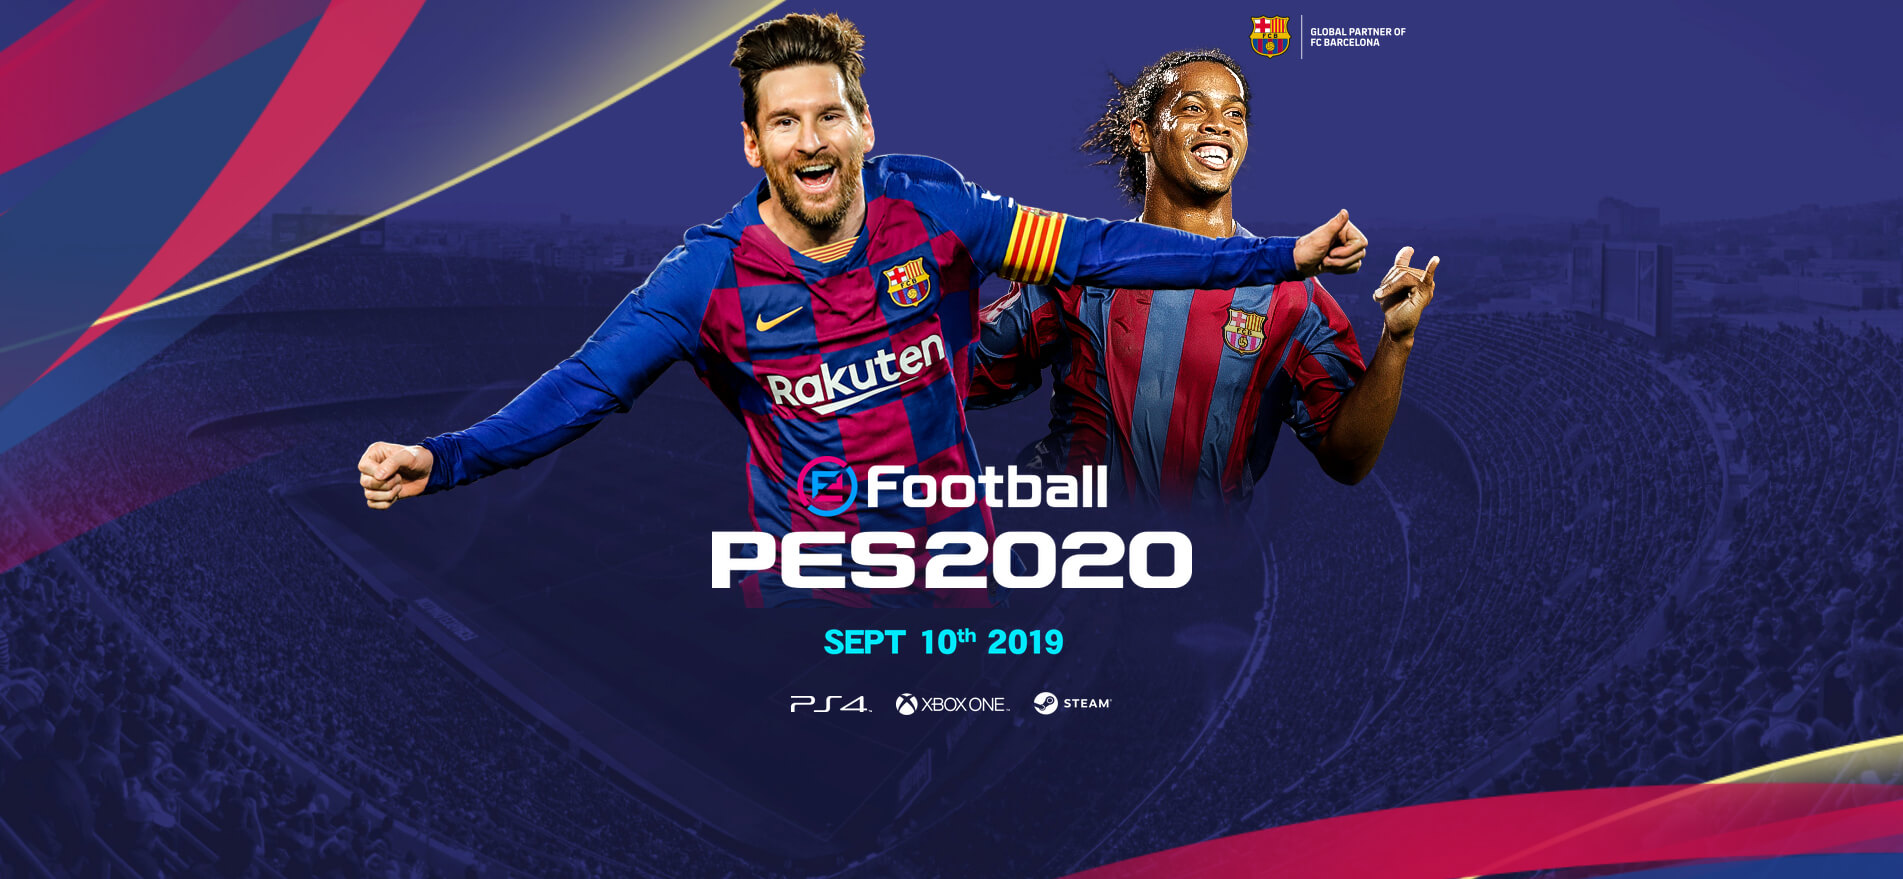 Демо eFootball PES 2020 выйдет 30 июля (уже доступна) (фото)